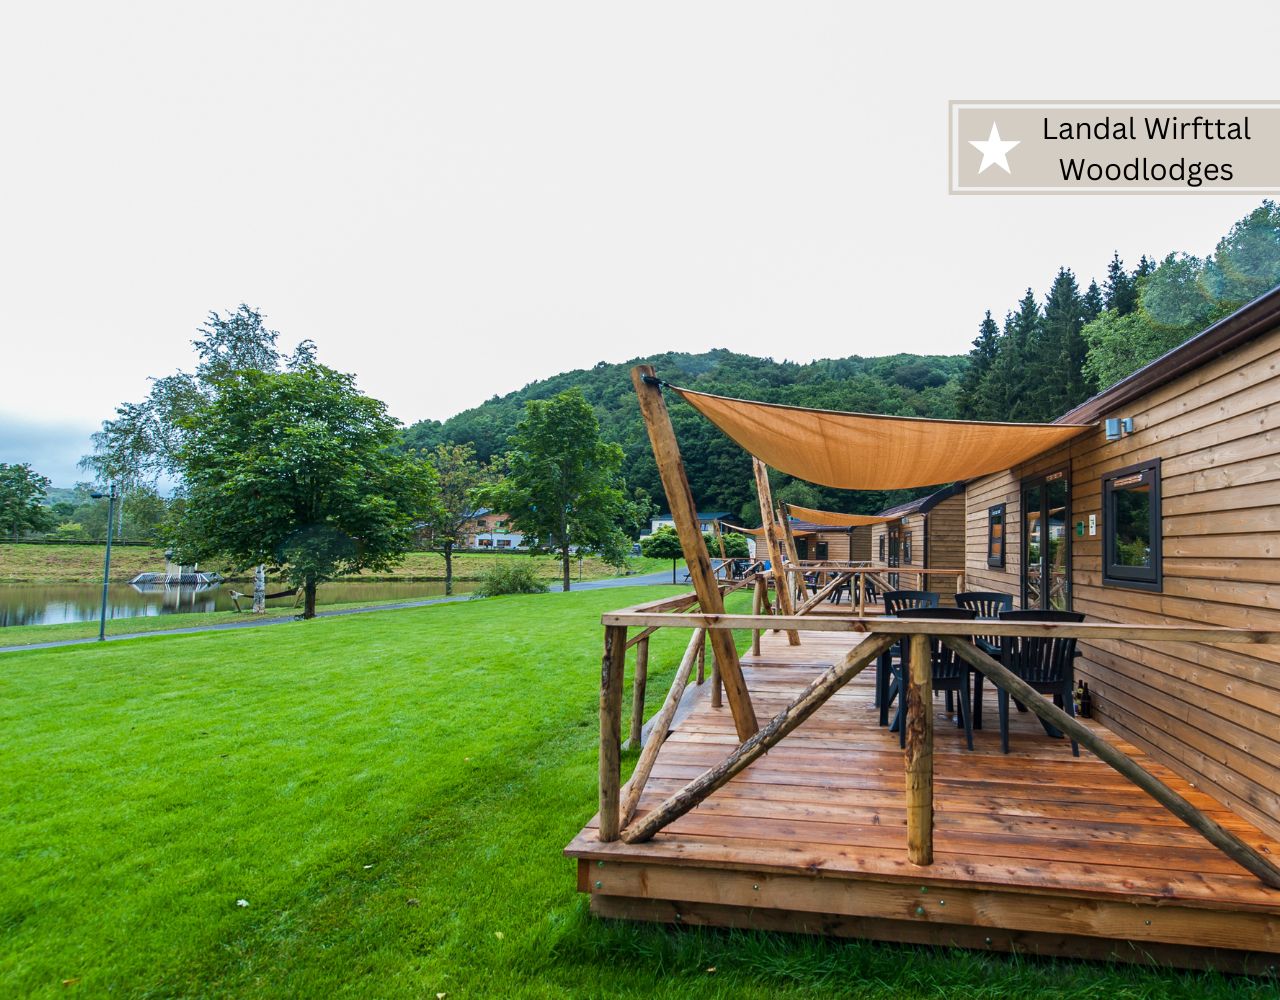 Ferienpark Landal Deutschland - die Woodlodges in Wirfttal in der Eifel